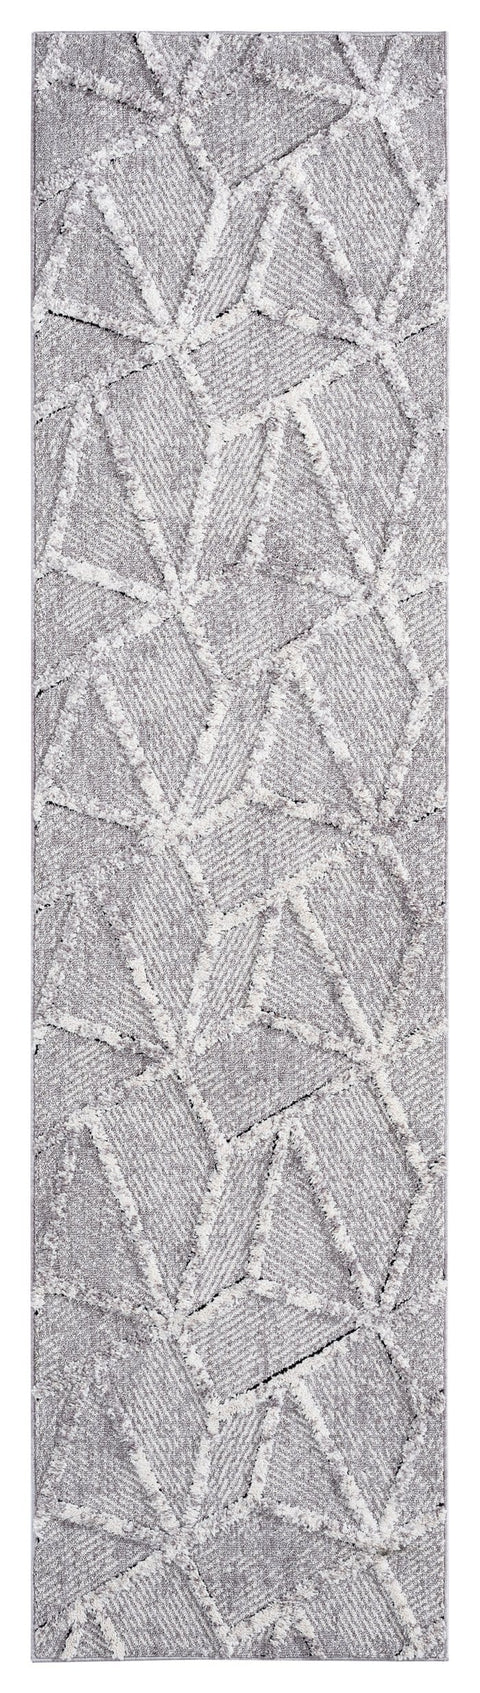 Soraya Grey Abstract Textured Runner Rug